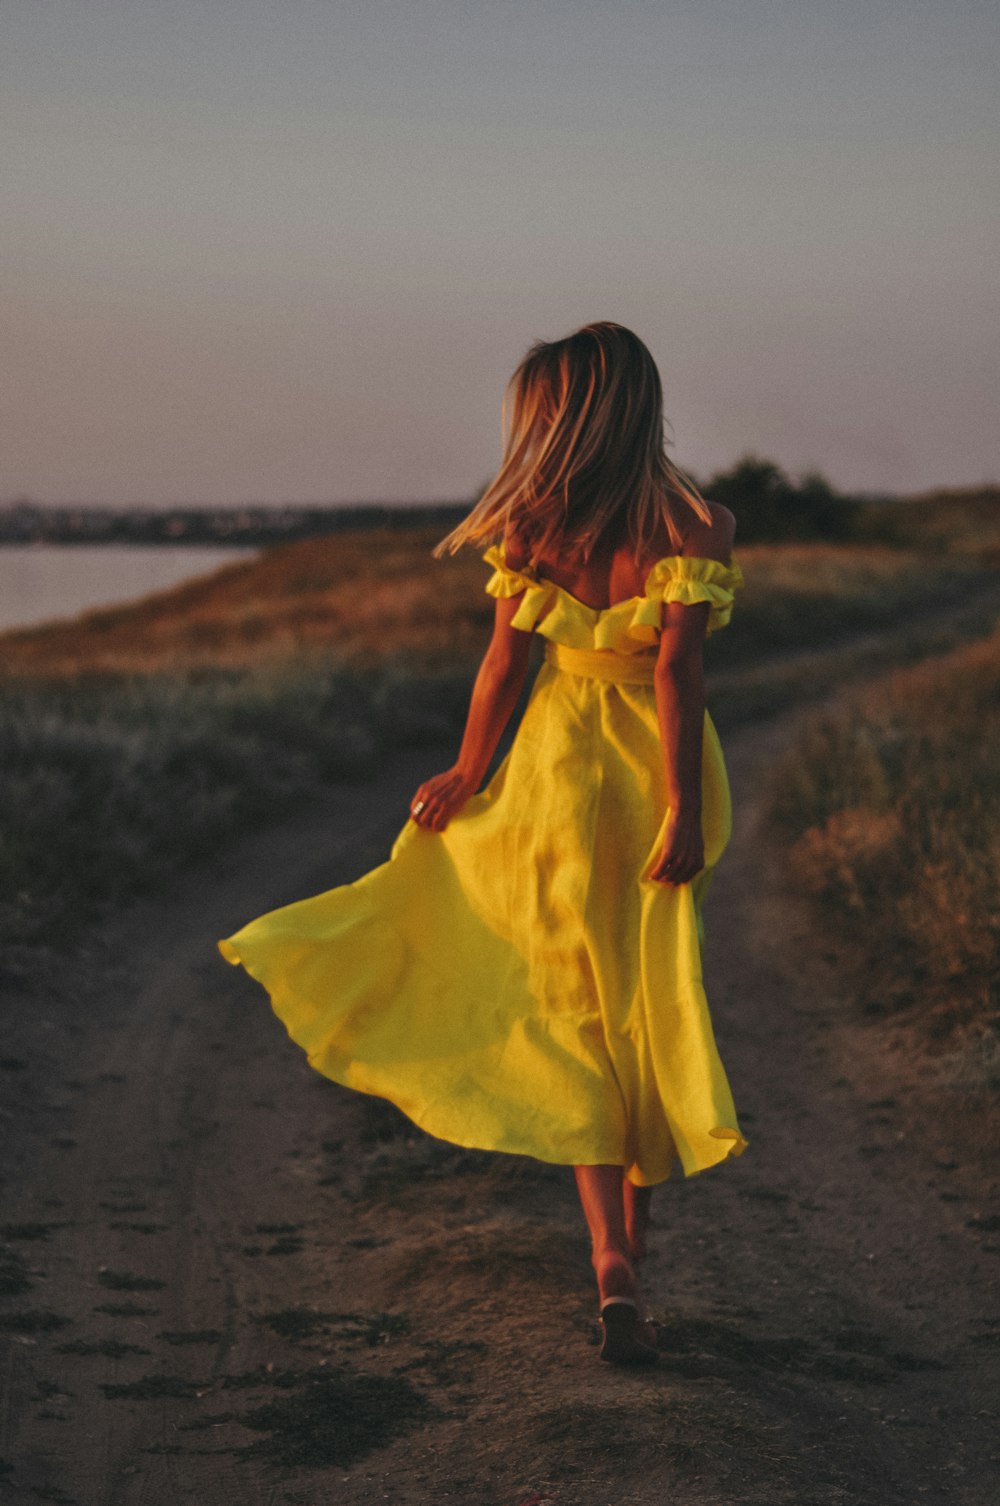 Une femme en robe jaune marchant sur un chemin de terre